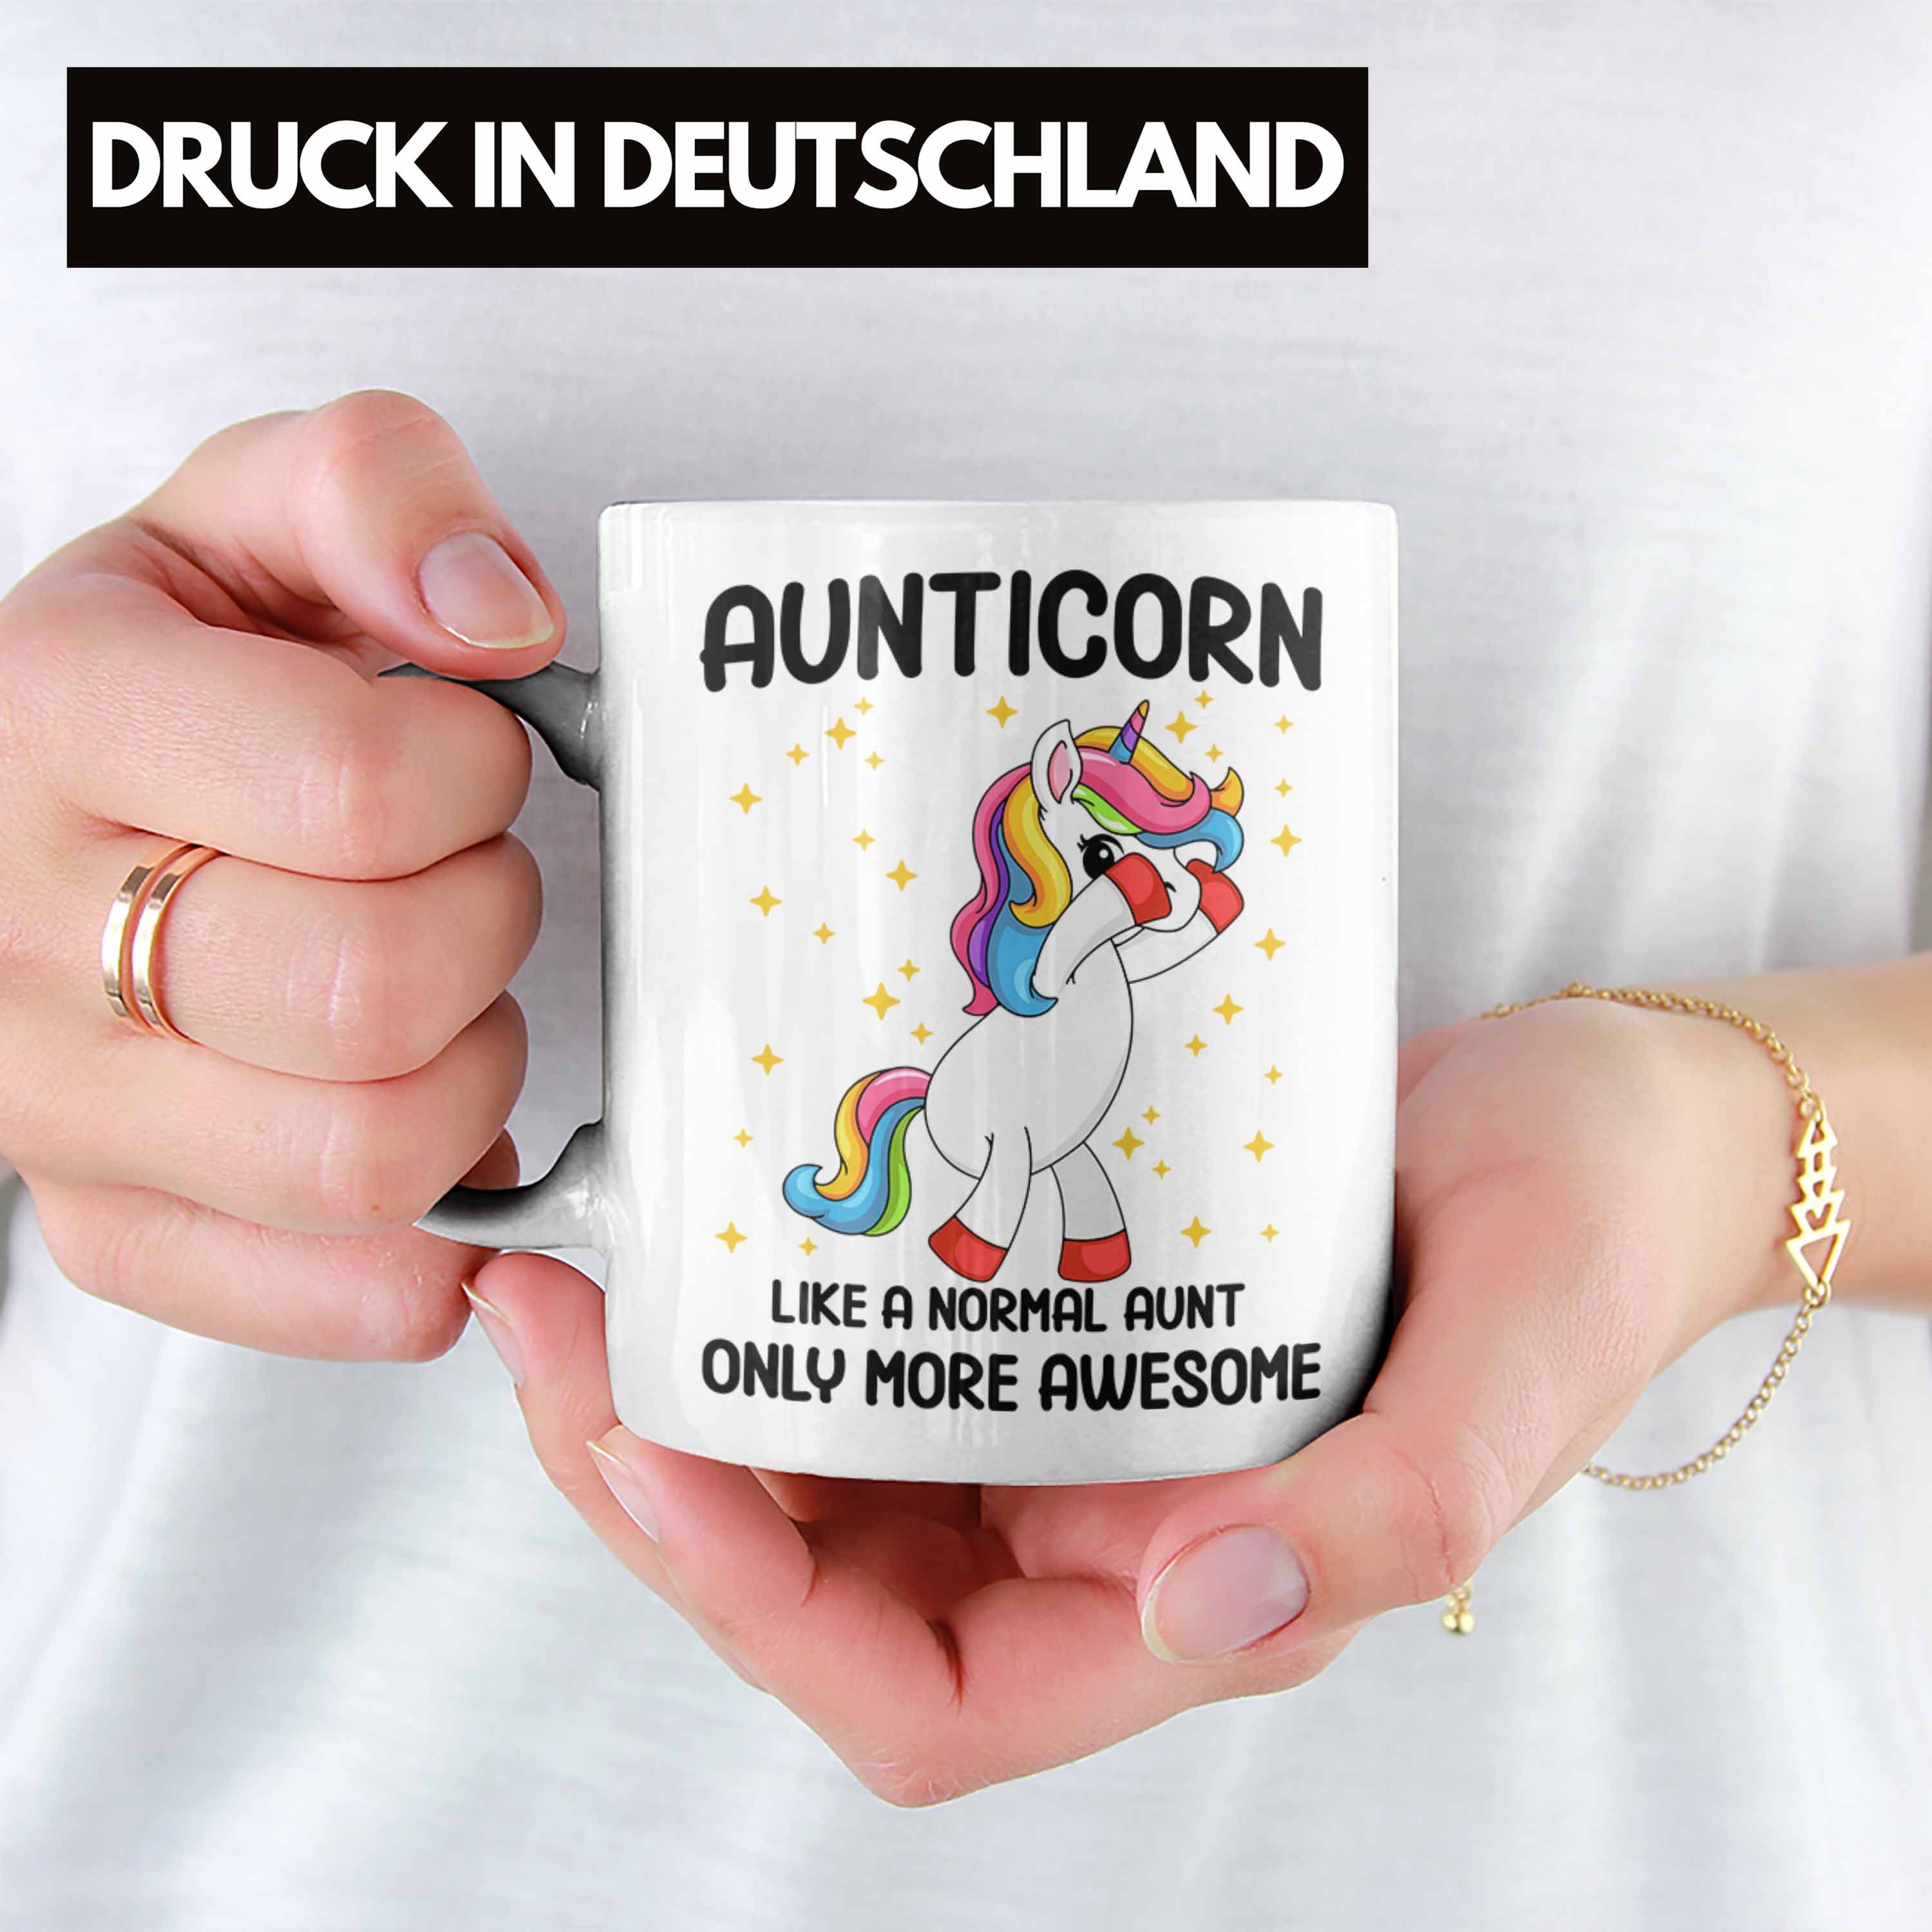 Trendation Tasse Trendation - Geschenk Geschenk Lustig Weiss Aunticorn Geschenkidee Kaffeetasse Tasse Tante Tante Beste